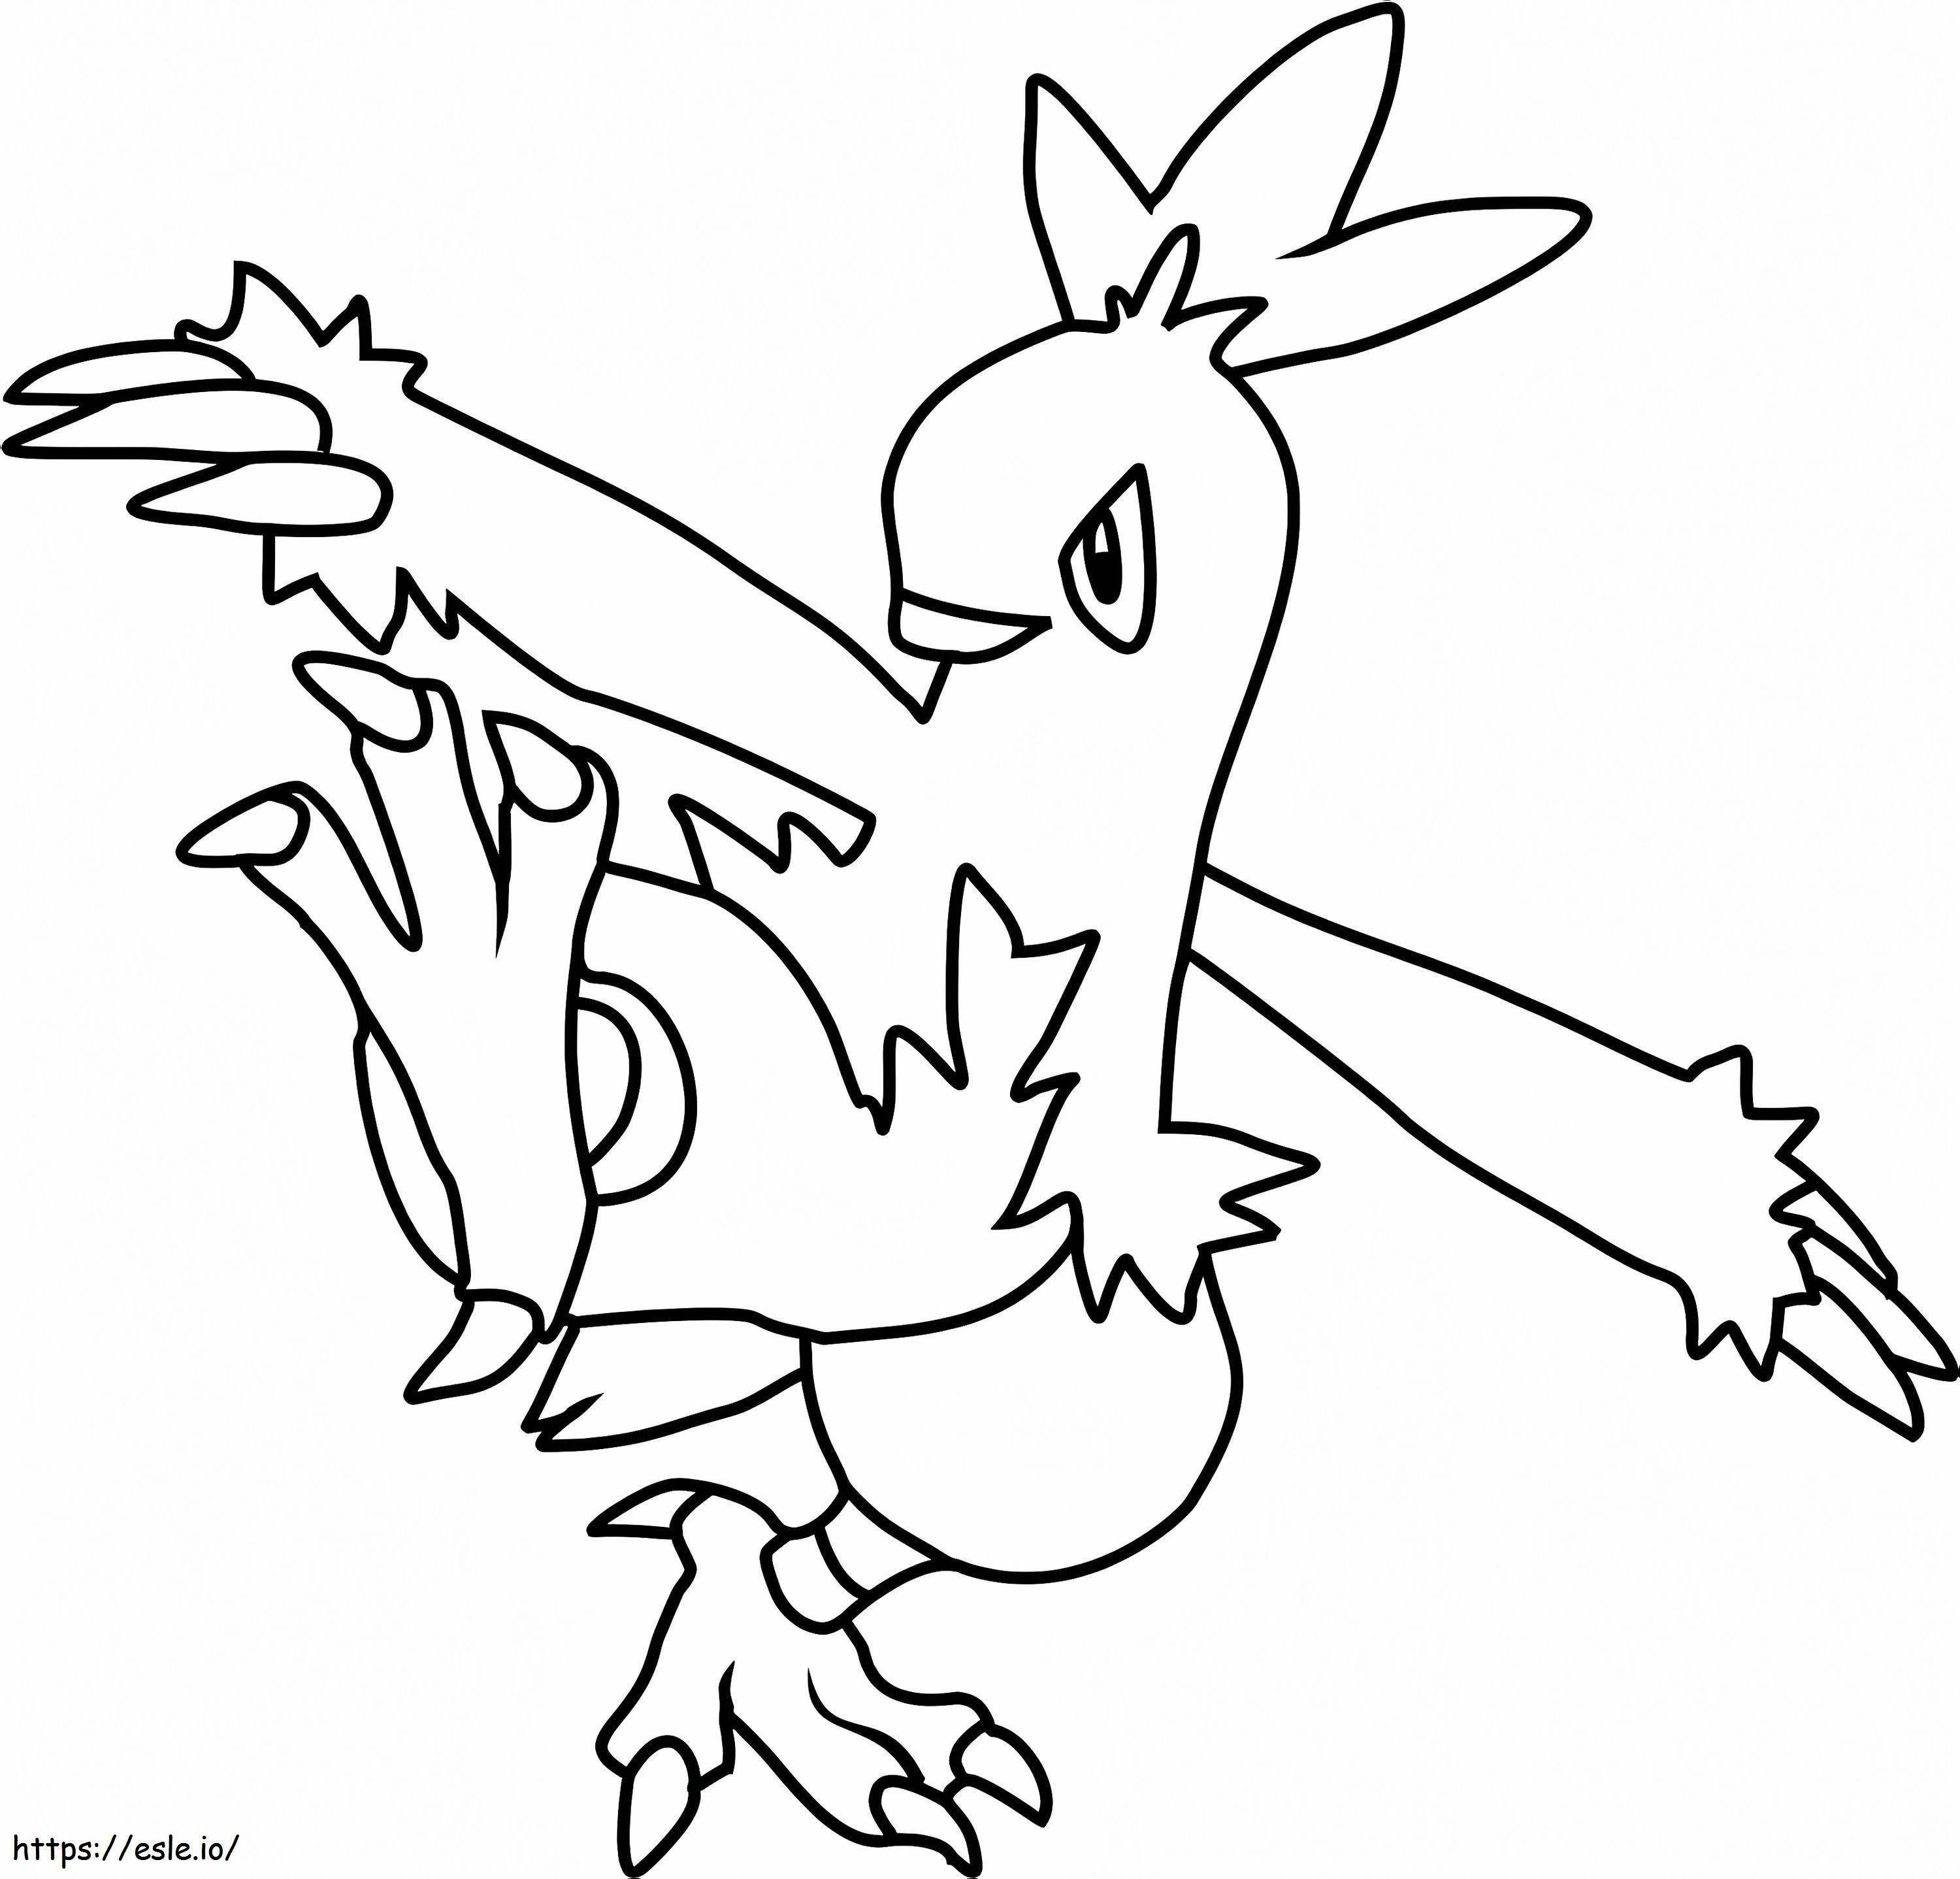 Coloriage Pokémon Combusken à imprimer dessin